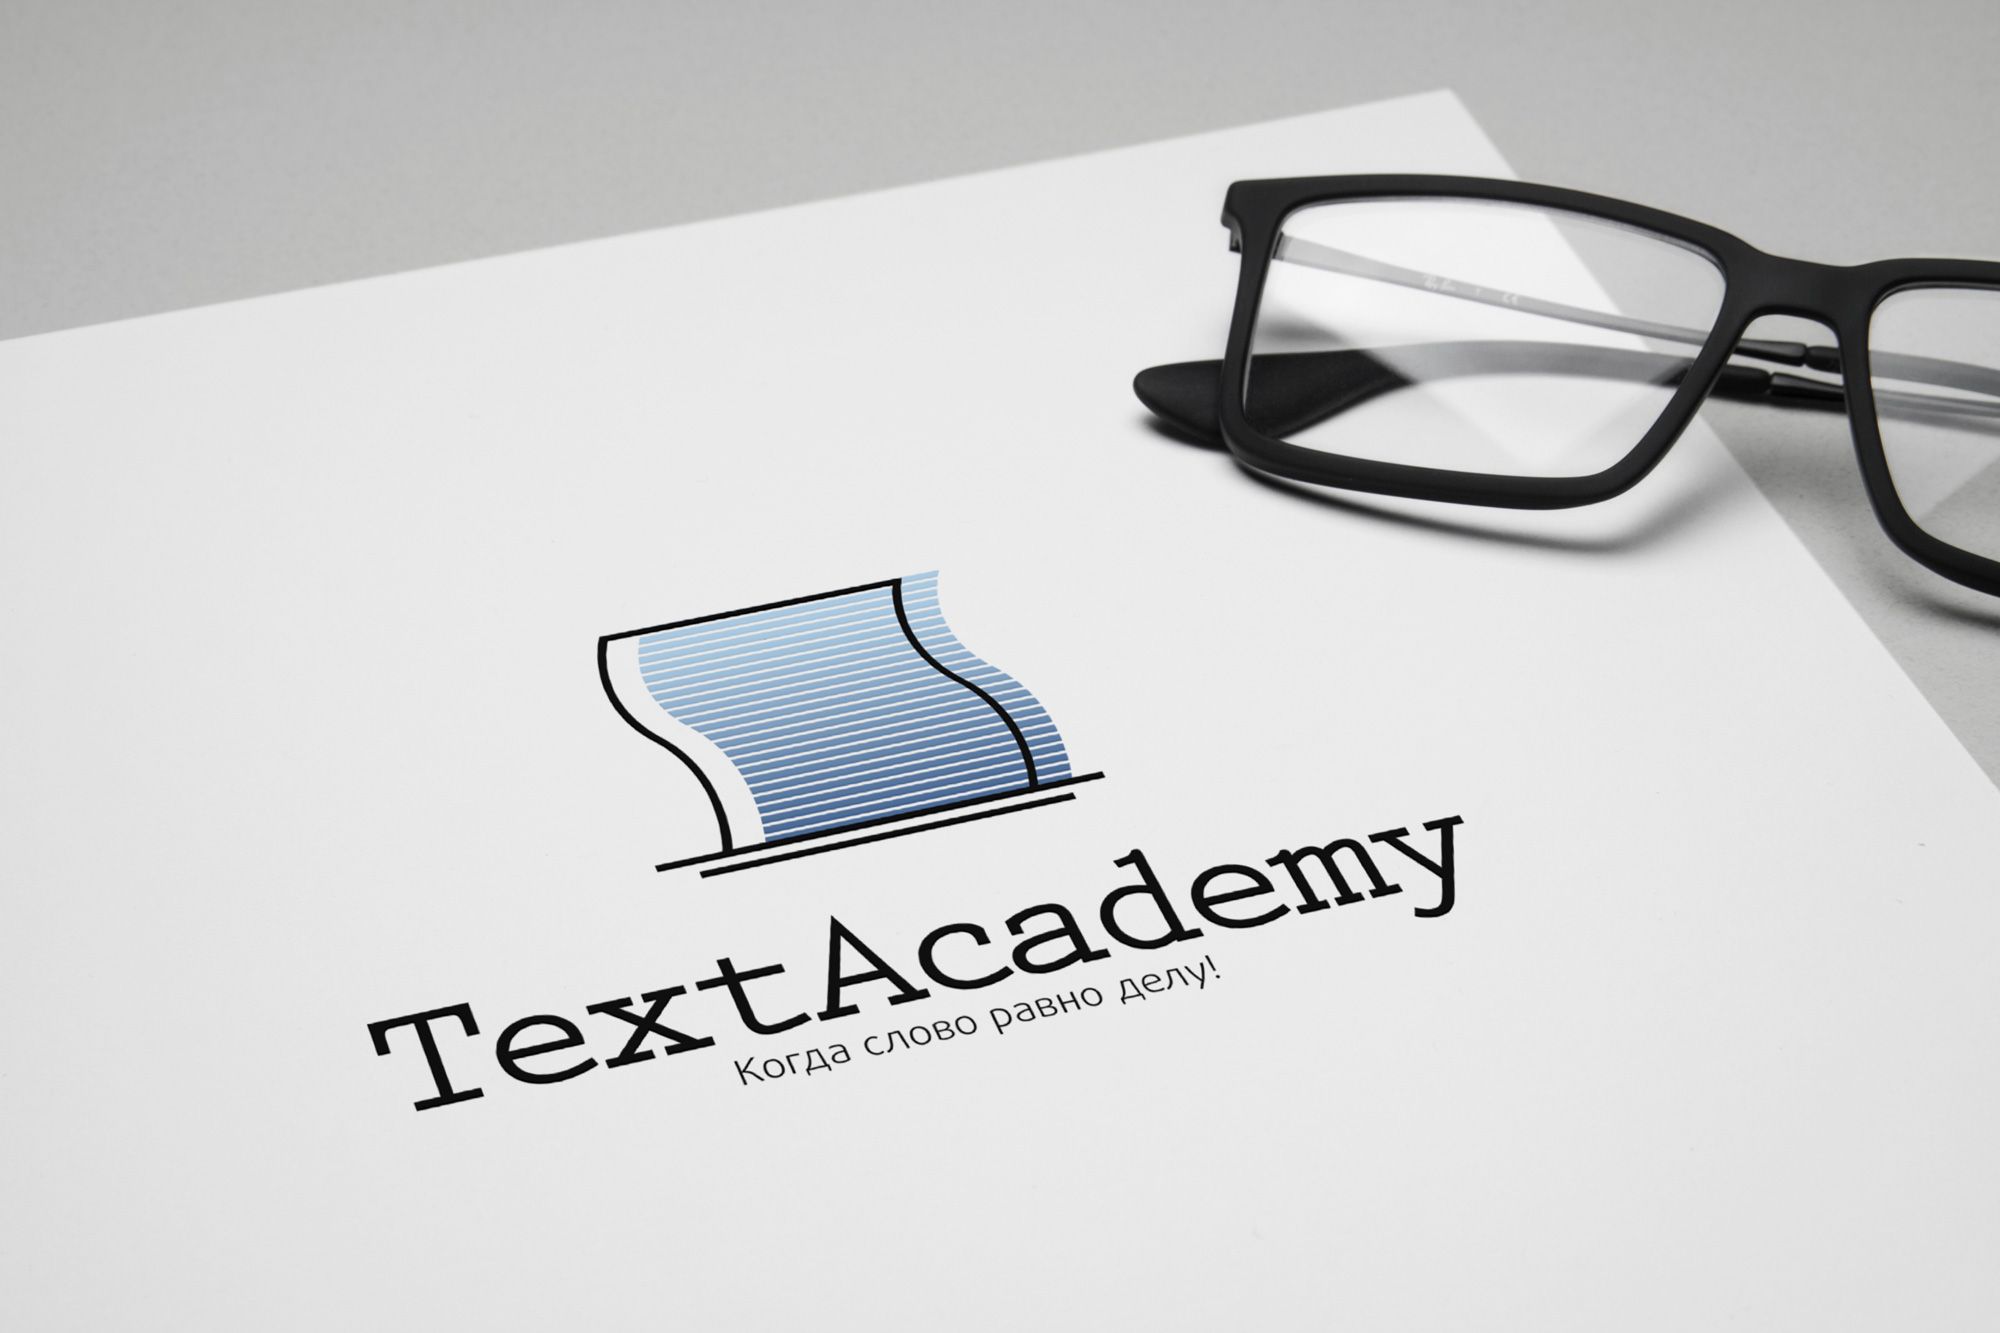 Логотип для TextAcademy - дизайнер V_Sofeev